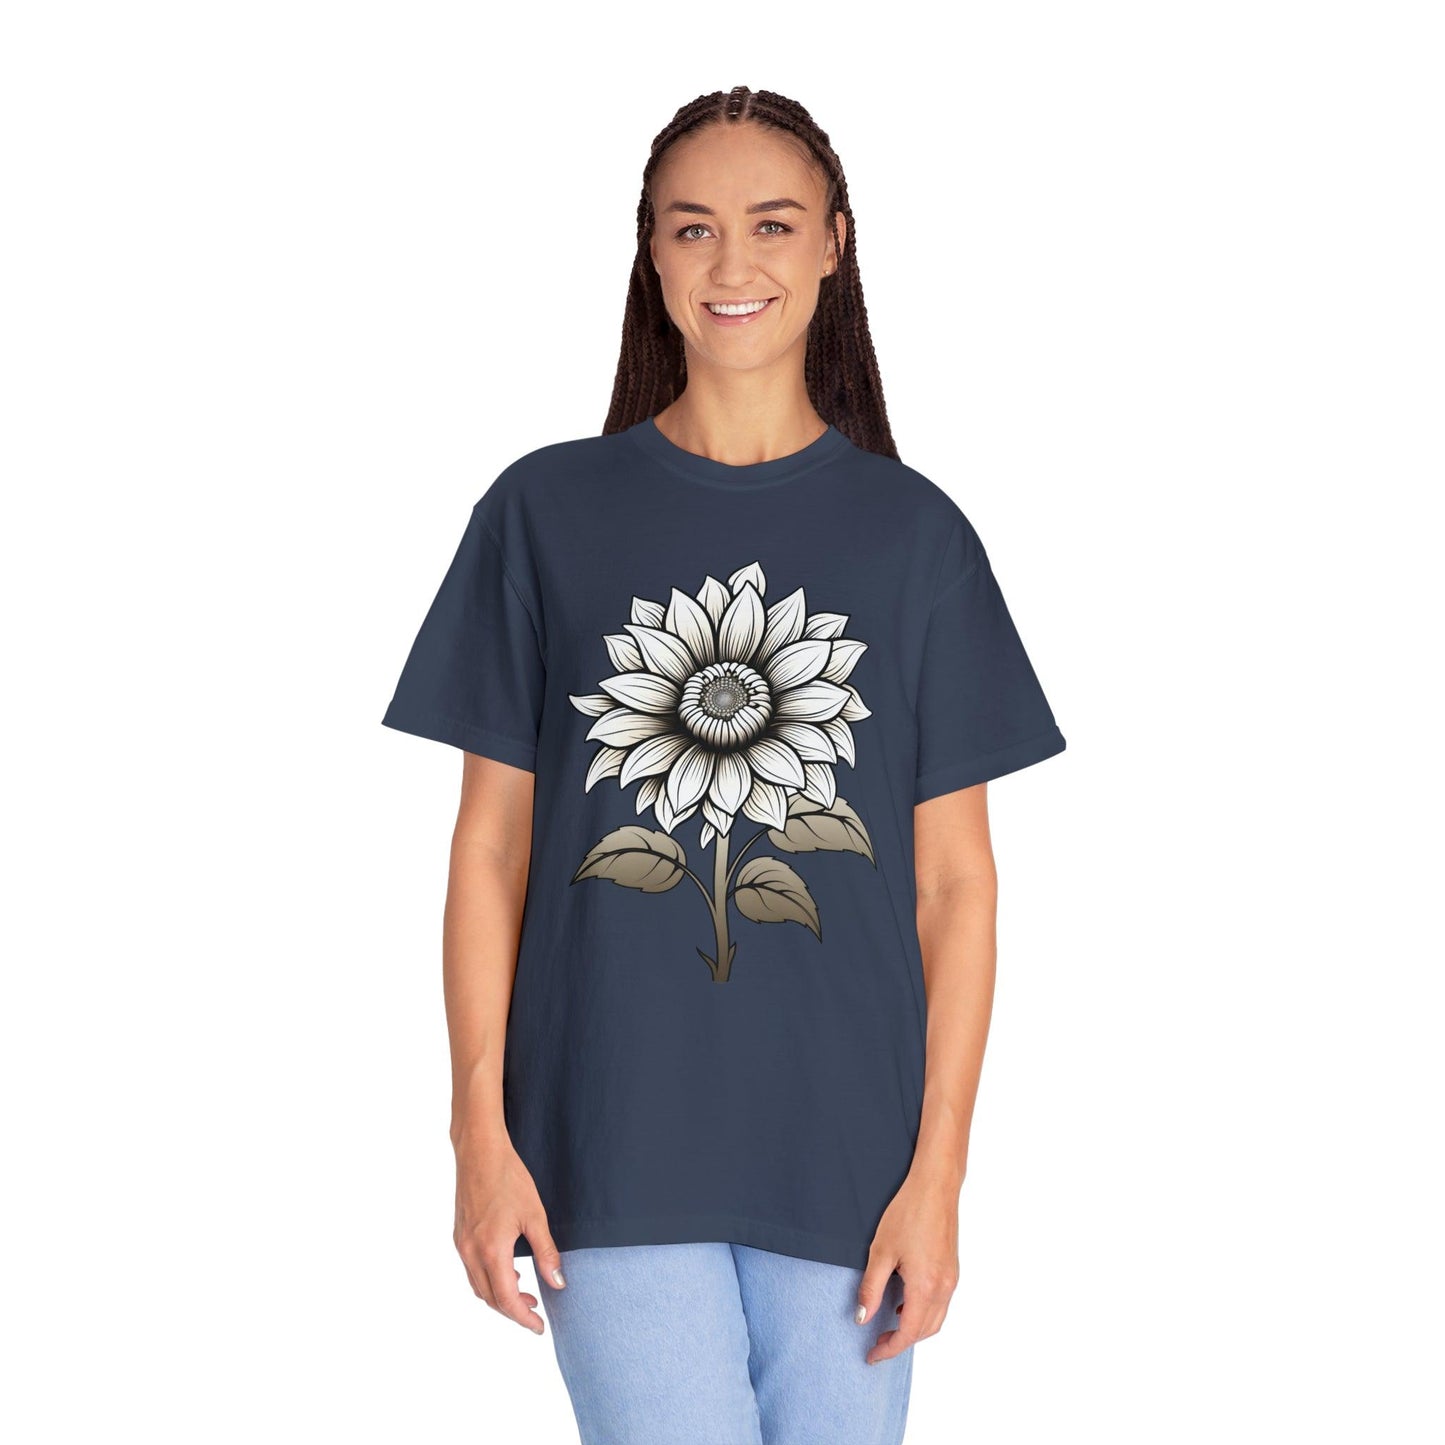 Sunflower Shirt Vintage Flower Shirt Aesthetic, Floral Graphic Tee Floral Shirt Flower T-shirt, Wild Flower Shirt Gift For Her